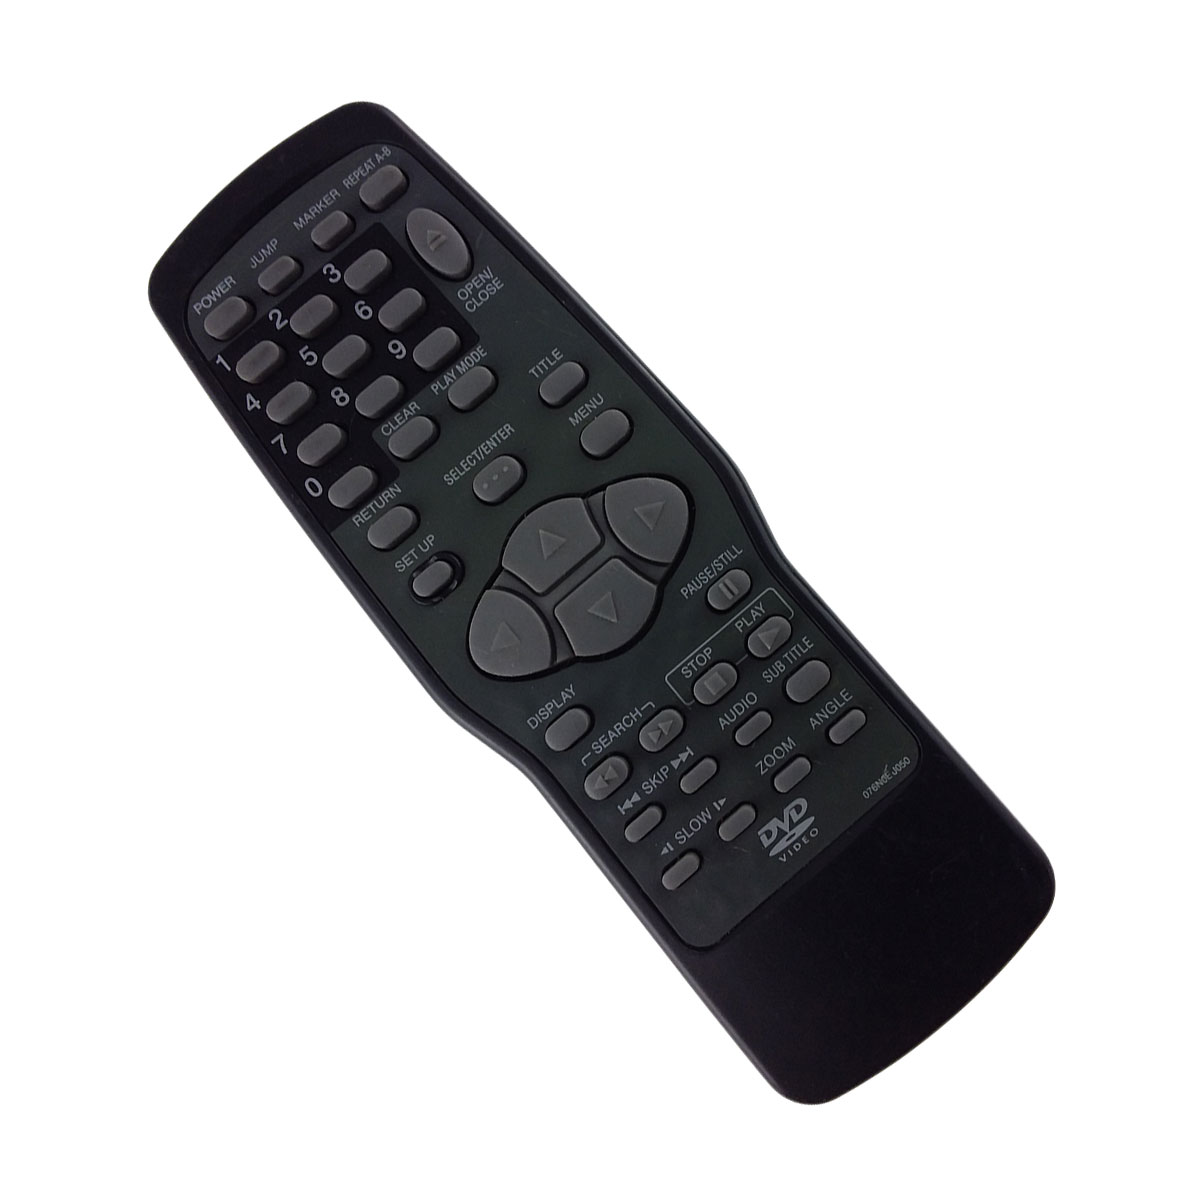 allplayer remote control